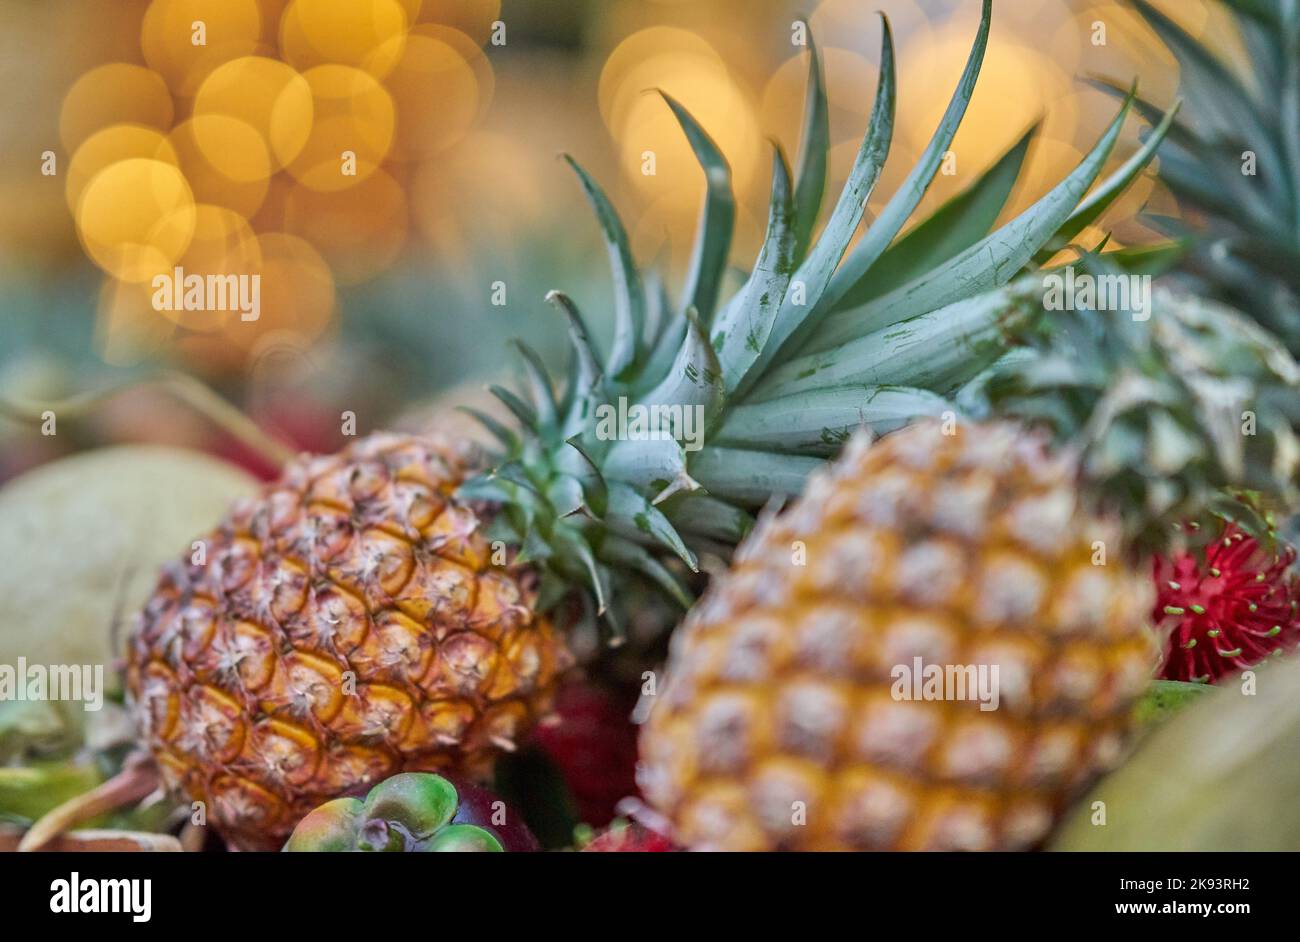 Mostra di ananas fresco presso un mercato della frutta locale, in Thailandia. Foto Stock